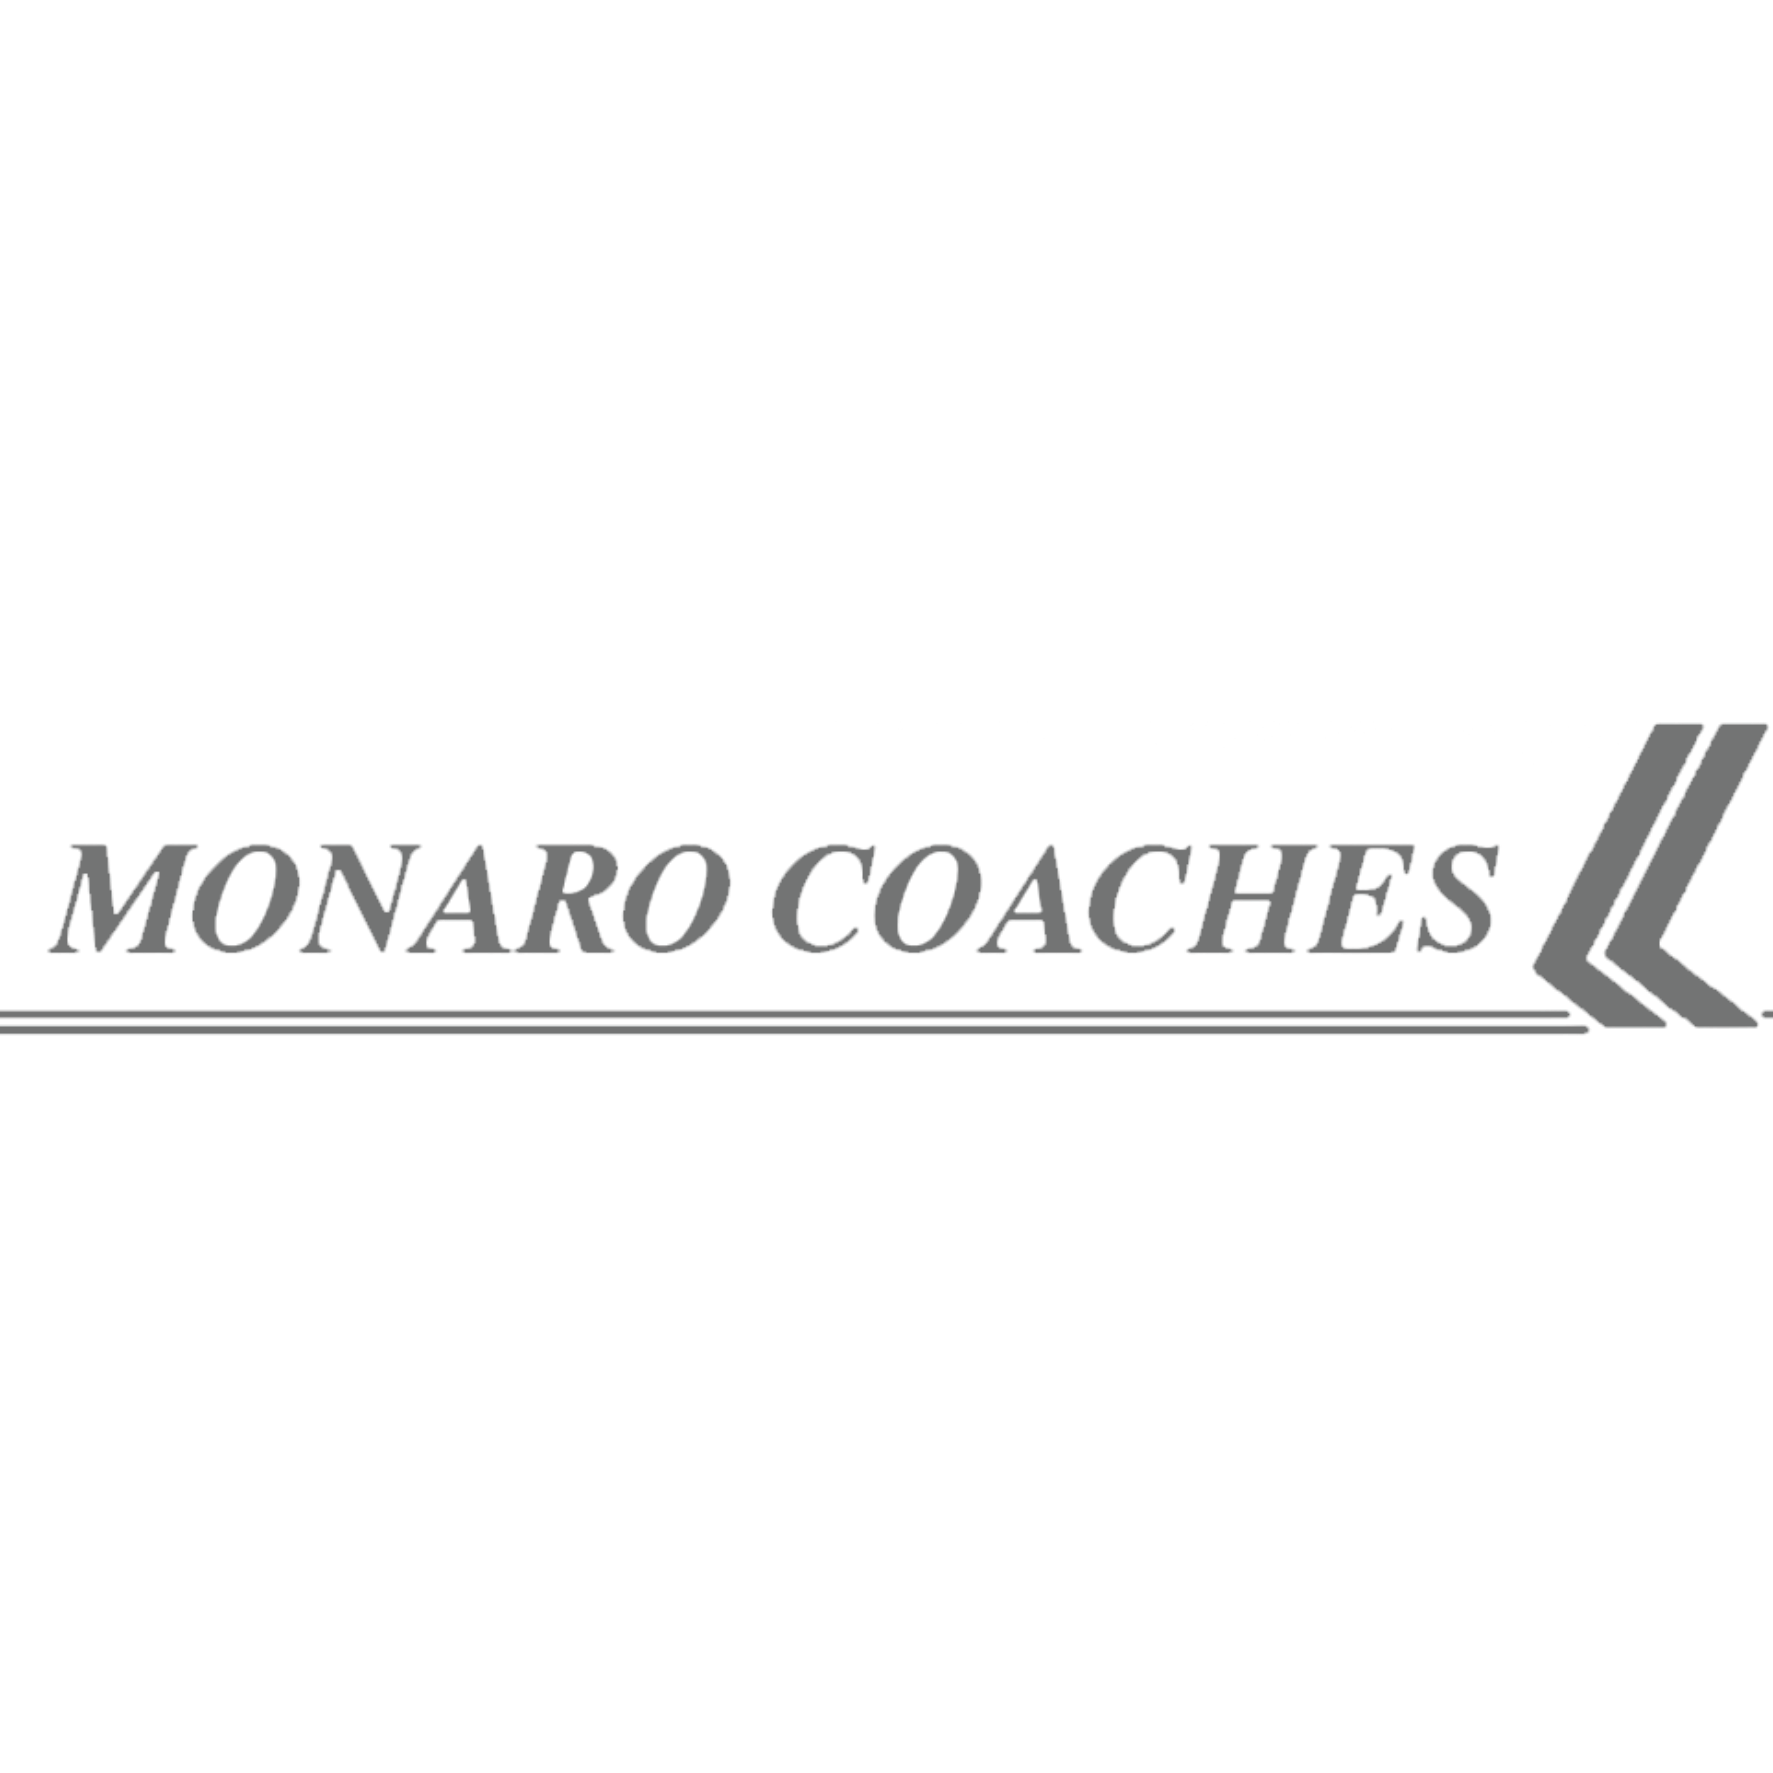 Monaro coaches